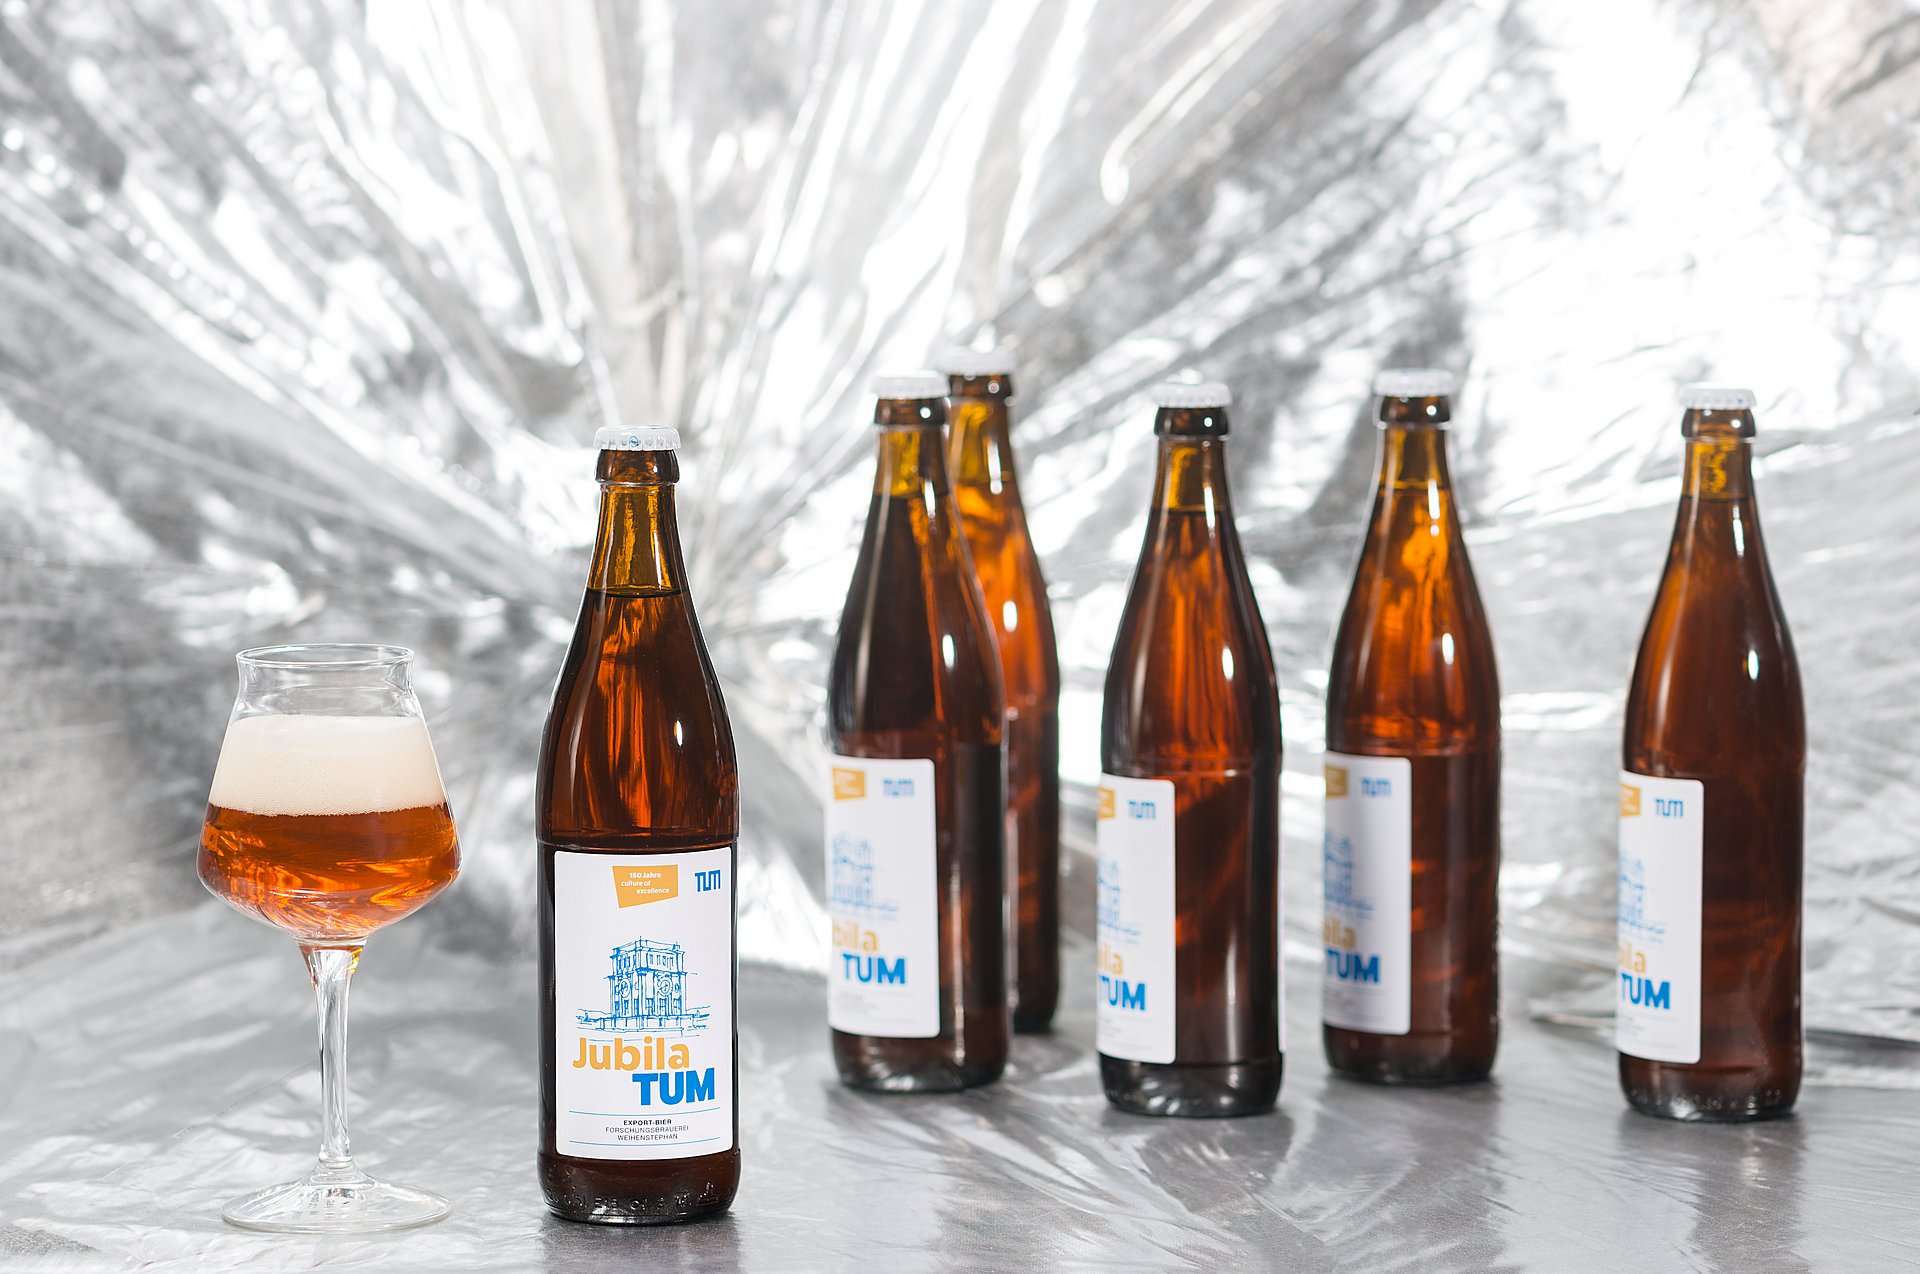 JubilaTUM ist ein untergäriges Export-Bier mit feiner Hopfennote, das im Jubiläumsjahr hergestellt wird. (Foto: U. Benz/ TUM)